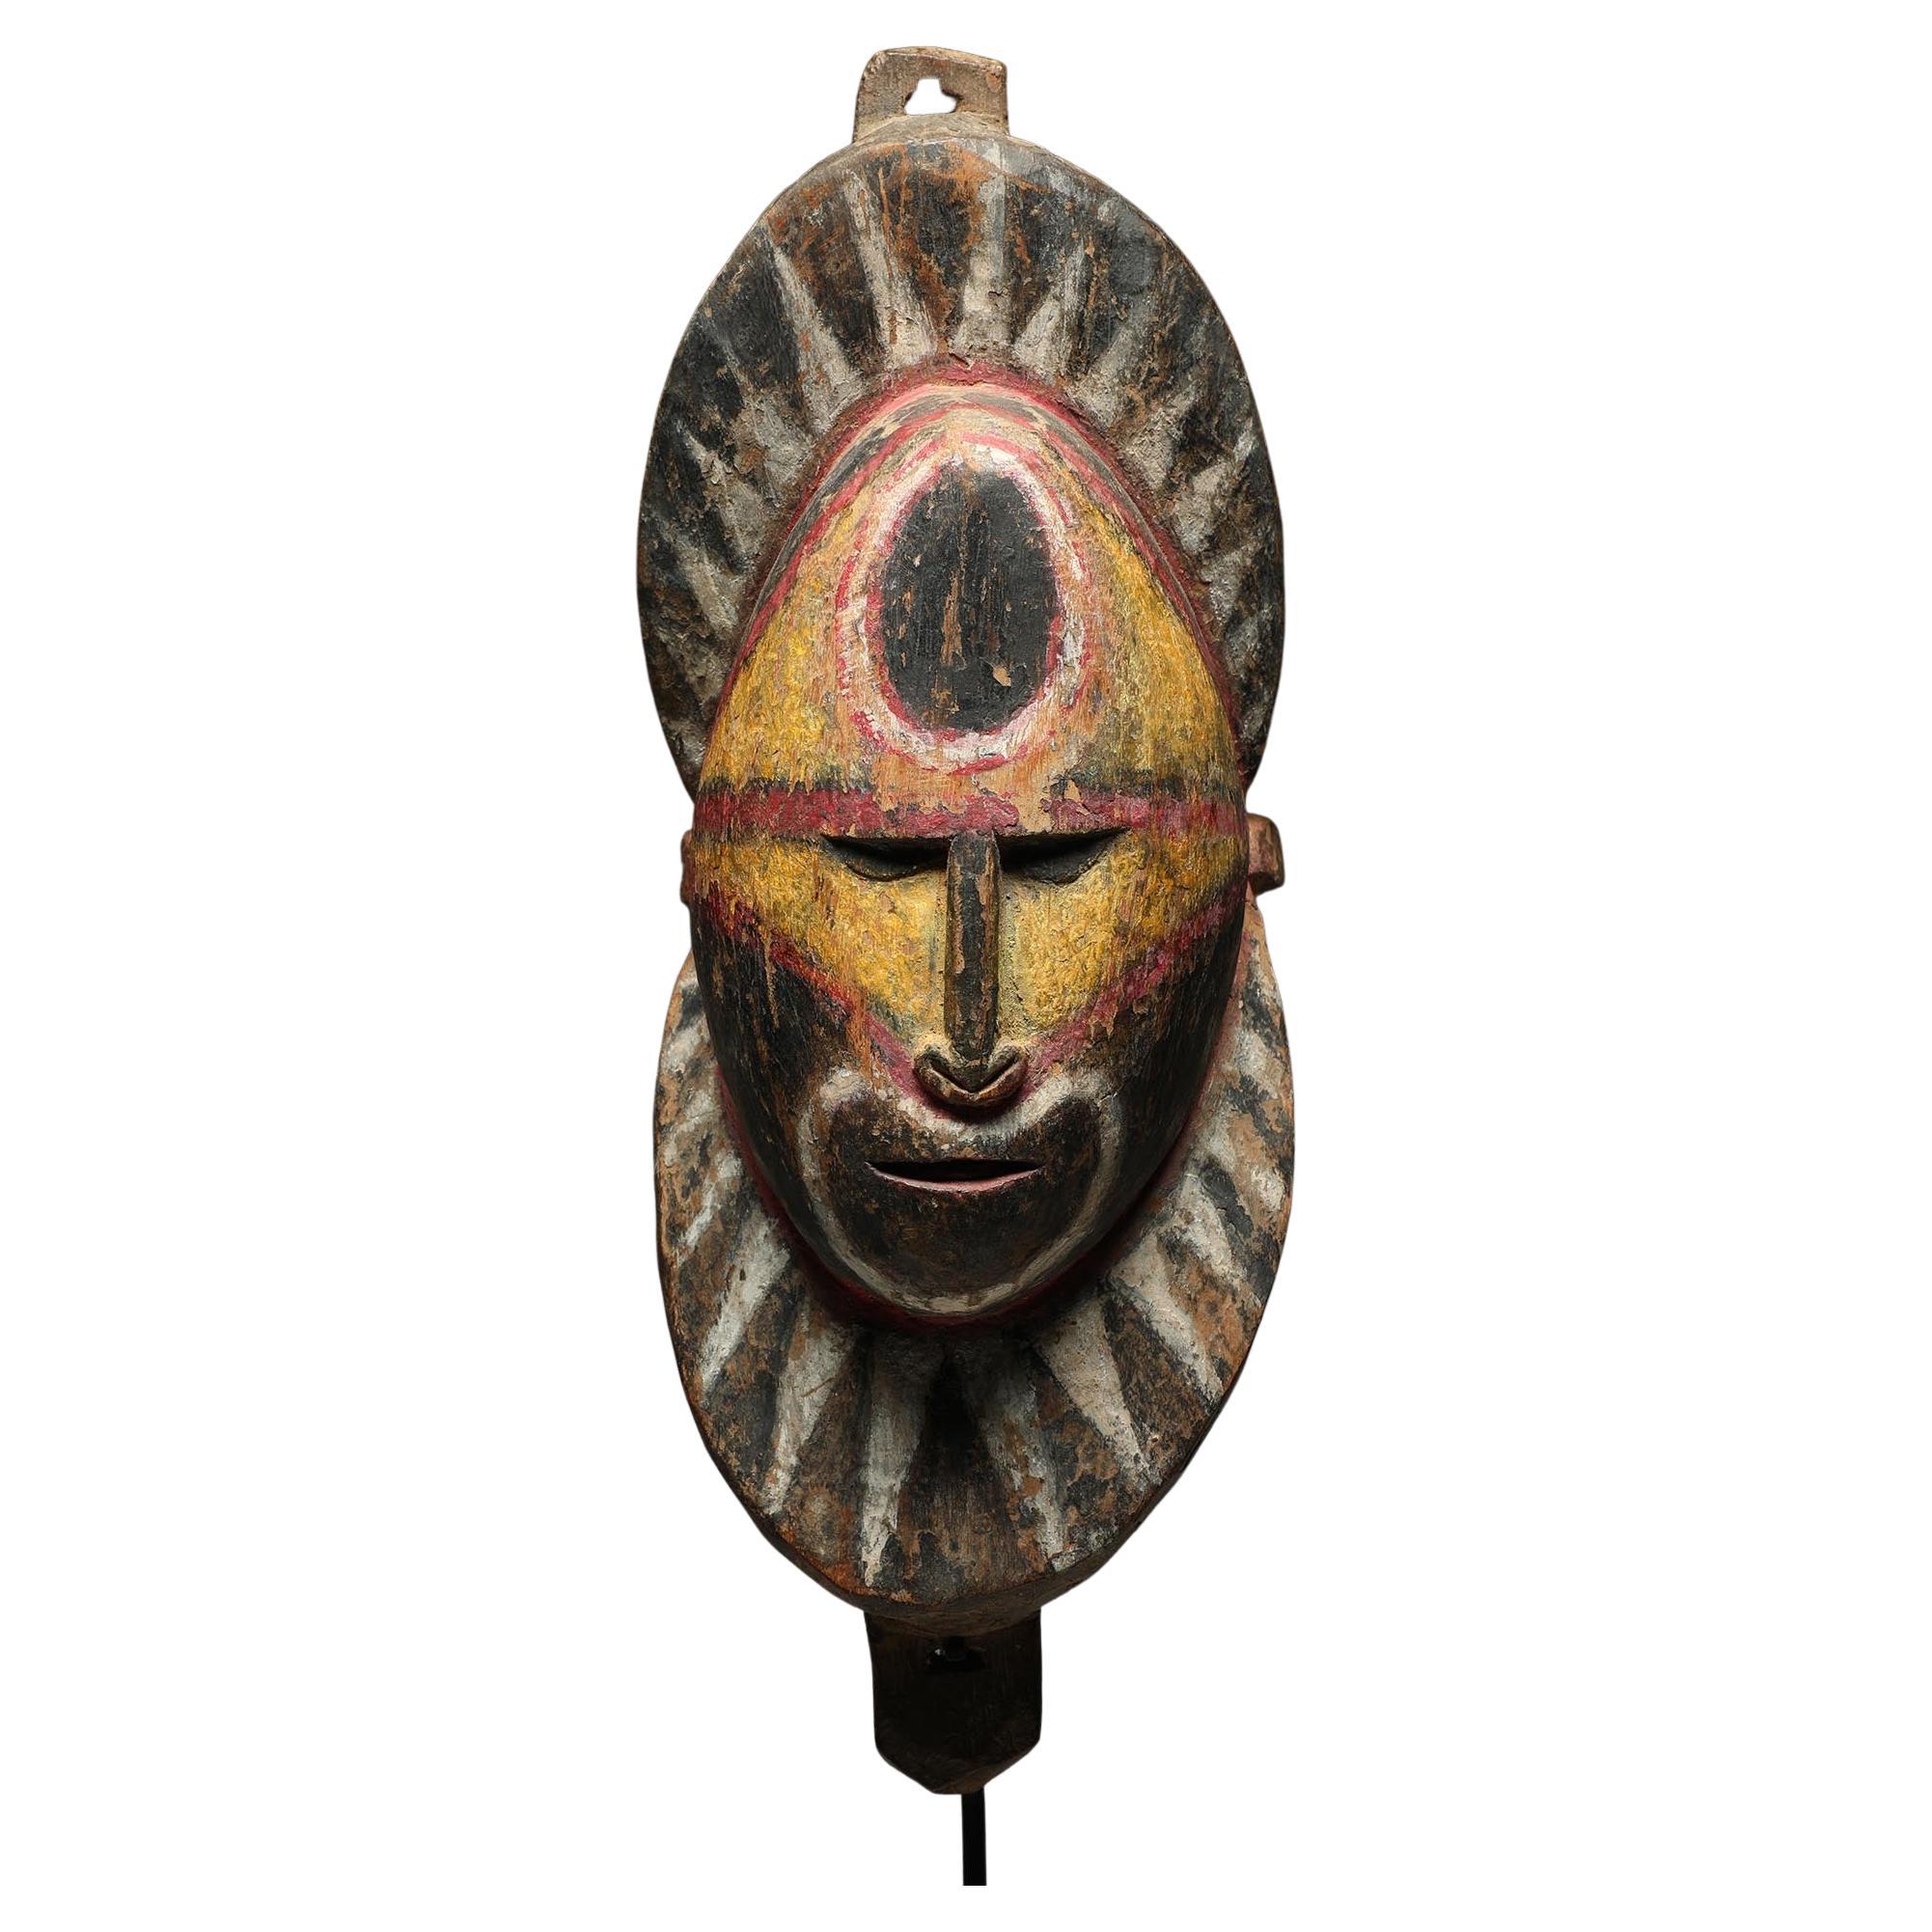 Masque d'igname ancien de Papouasie-Nouvelle-Guinée en bois Sepik jaune, rouge et noir sur base personnalisée